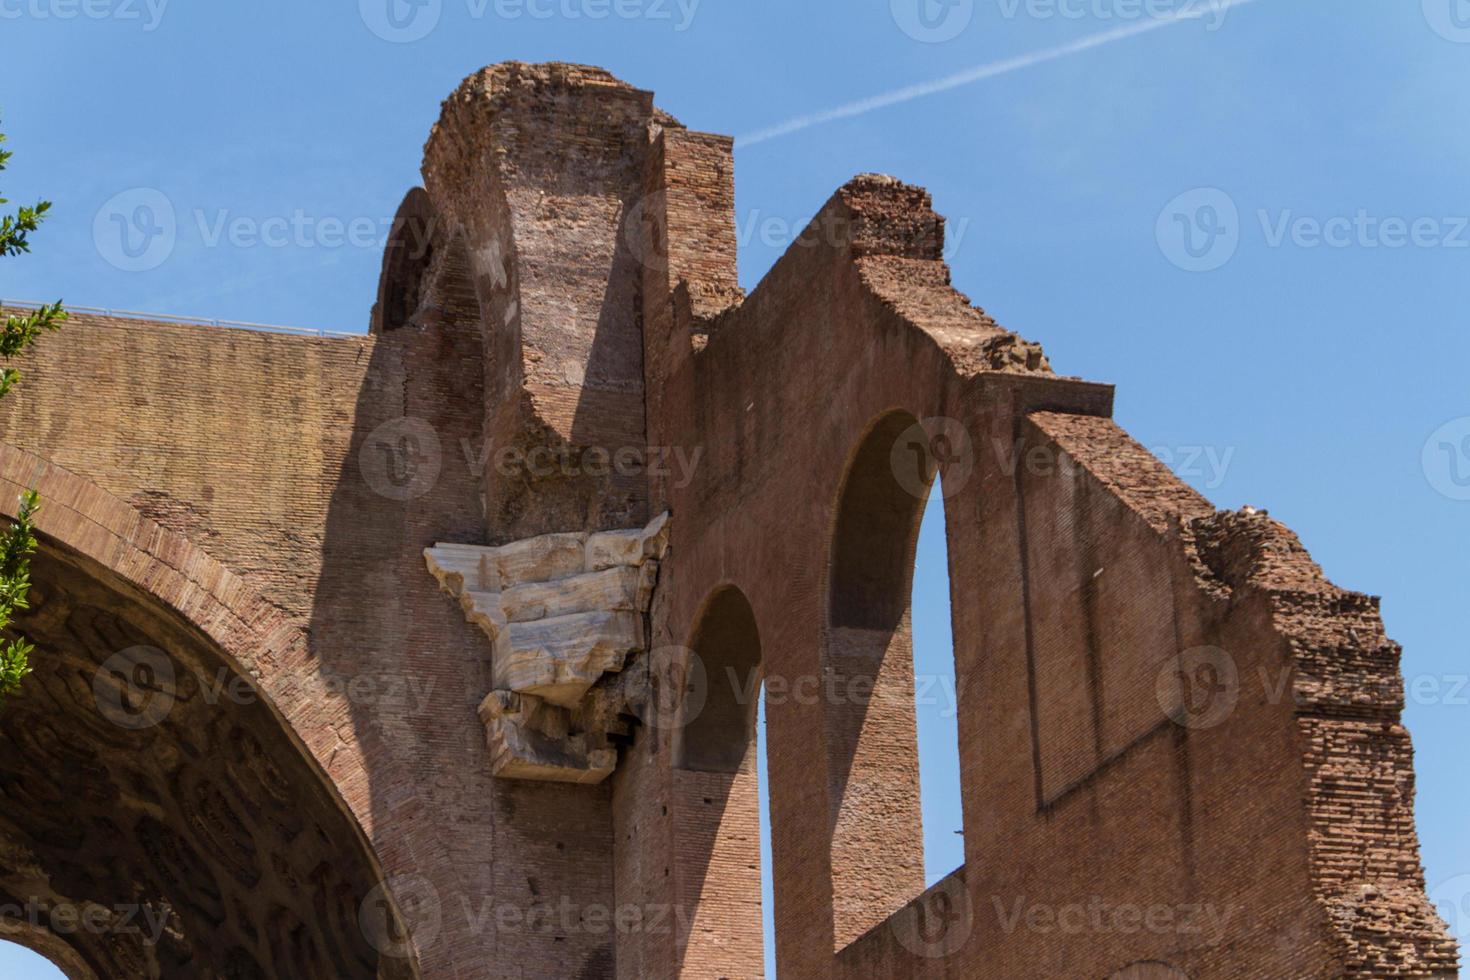 römische ruinen in rom, forum foto